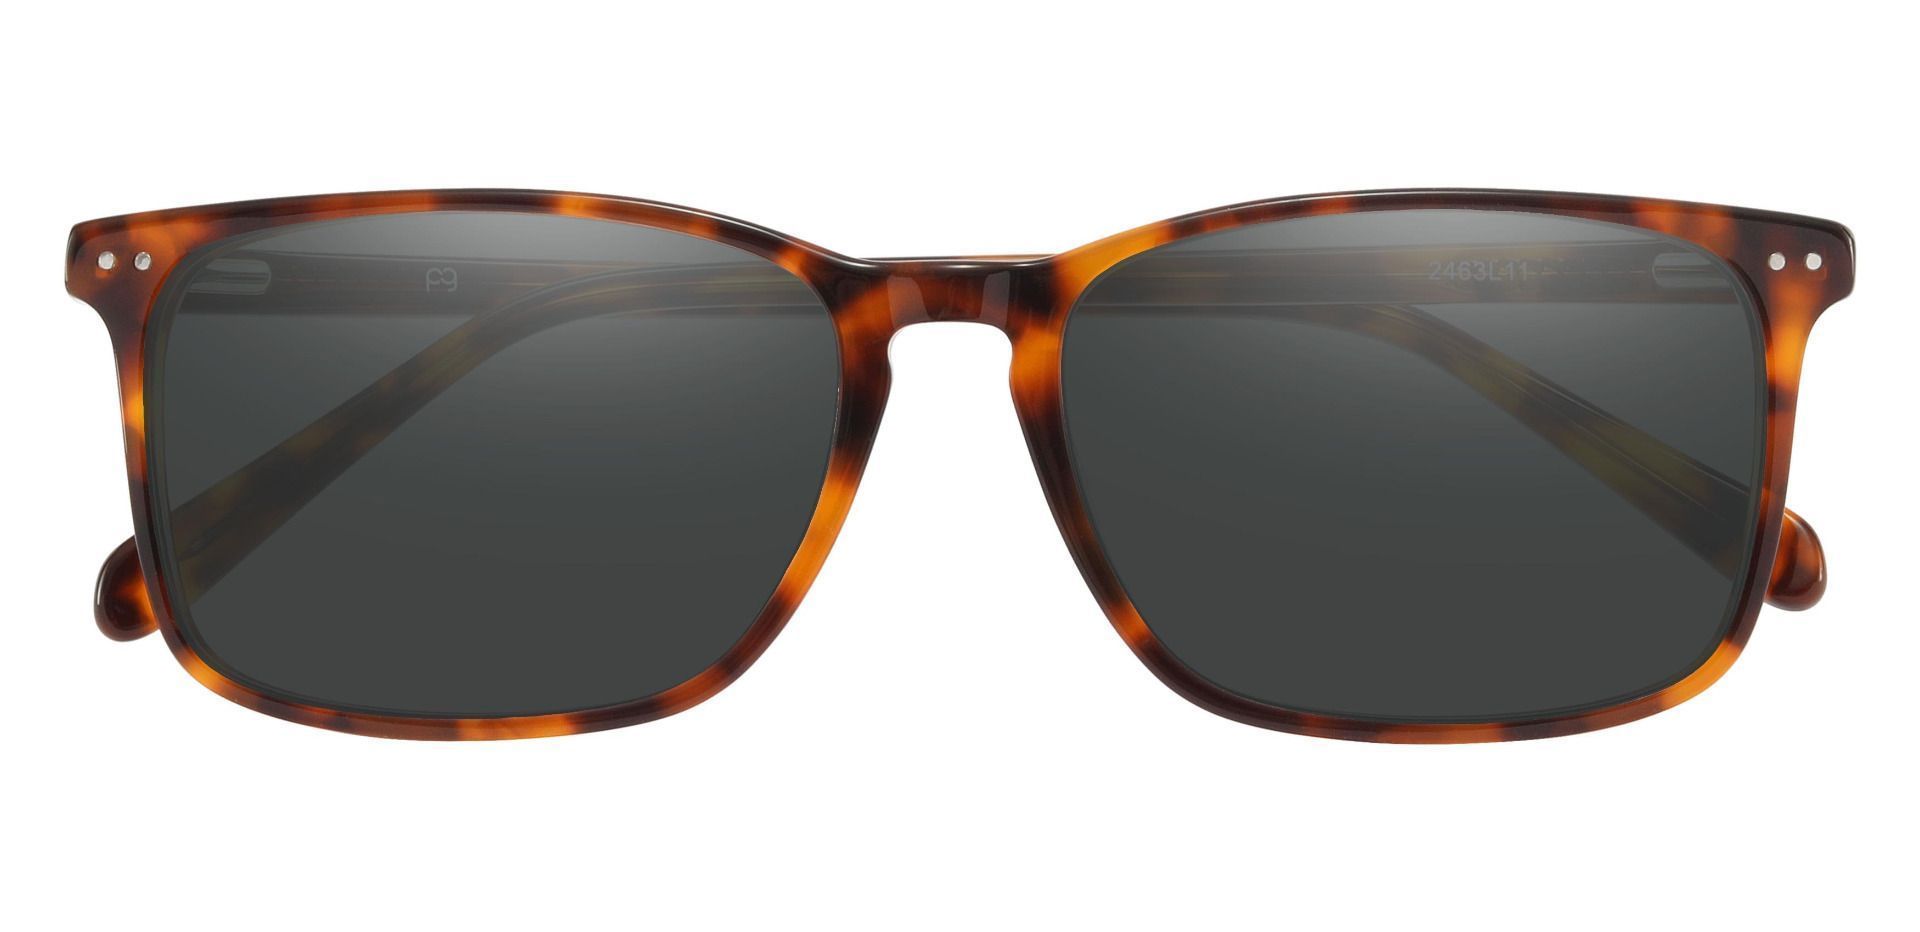 Finney Rectangle Lined Bifocal Sunglasses - Tortoise Frame With Gray Lenses